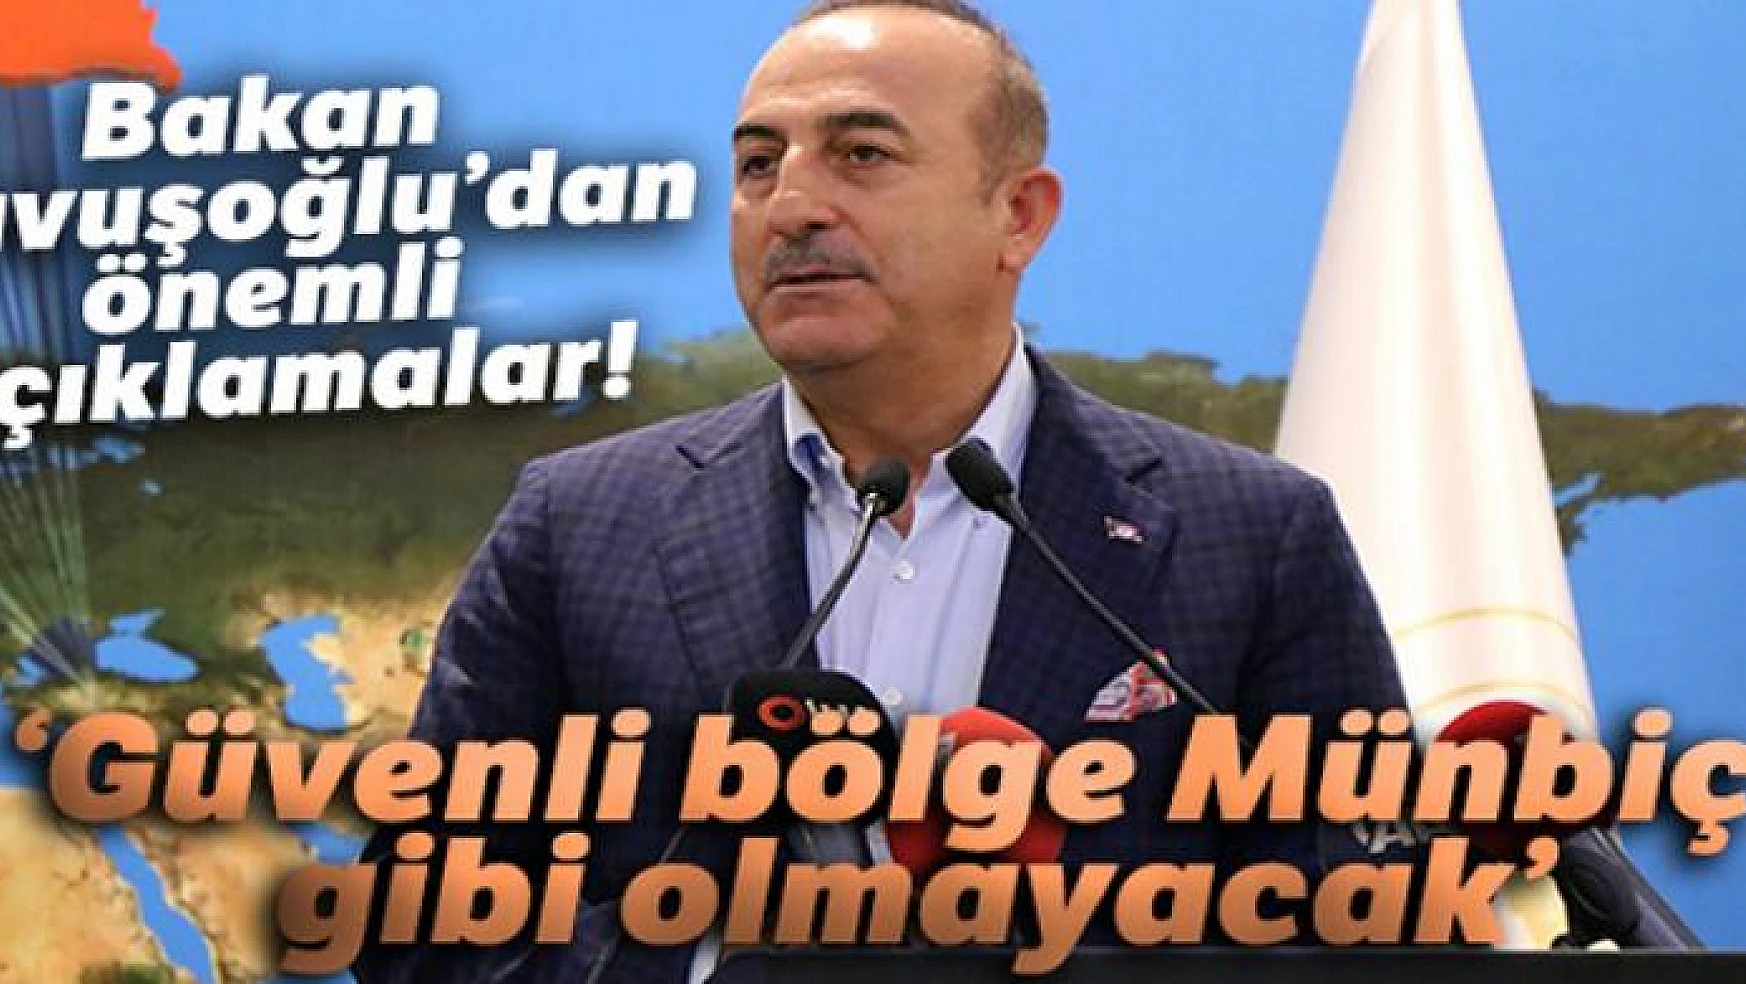 Bakan Çavuşoğlu: 'Güvenli bölge Münbiç gibi olmayacak'